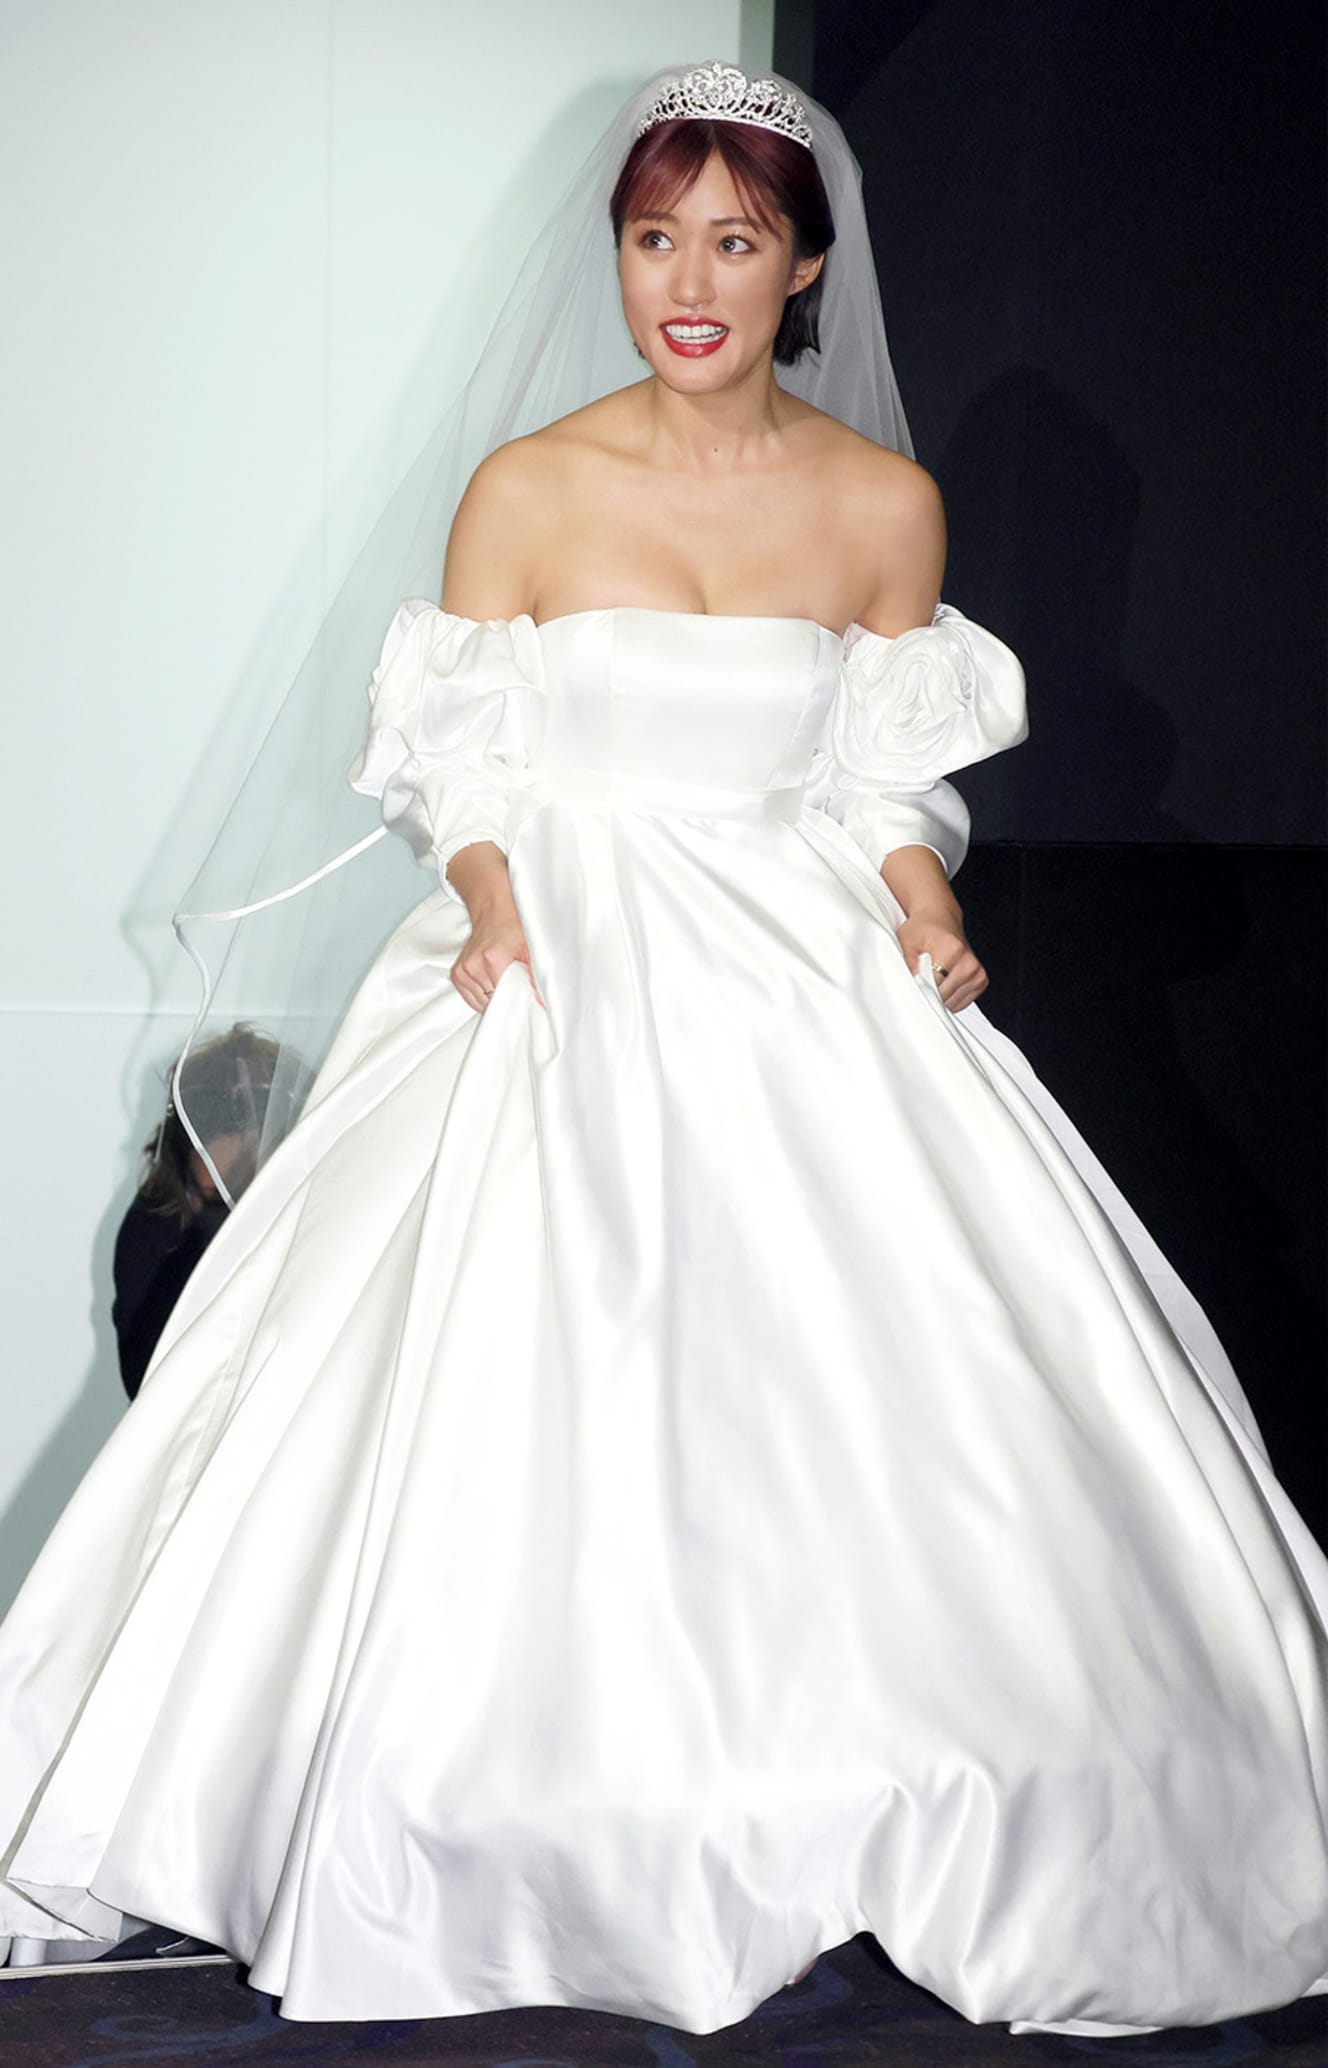 映画イベントにウェディングドレスをモチーフにした衣装で登場した王林。「慣れないです」と苦笑